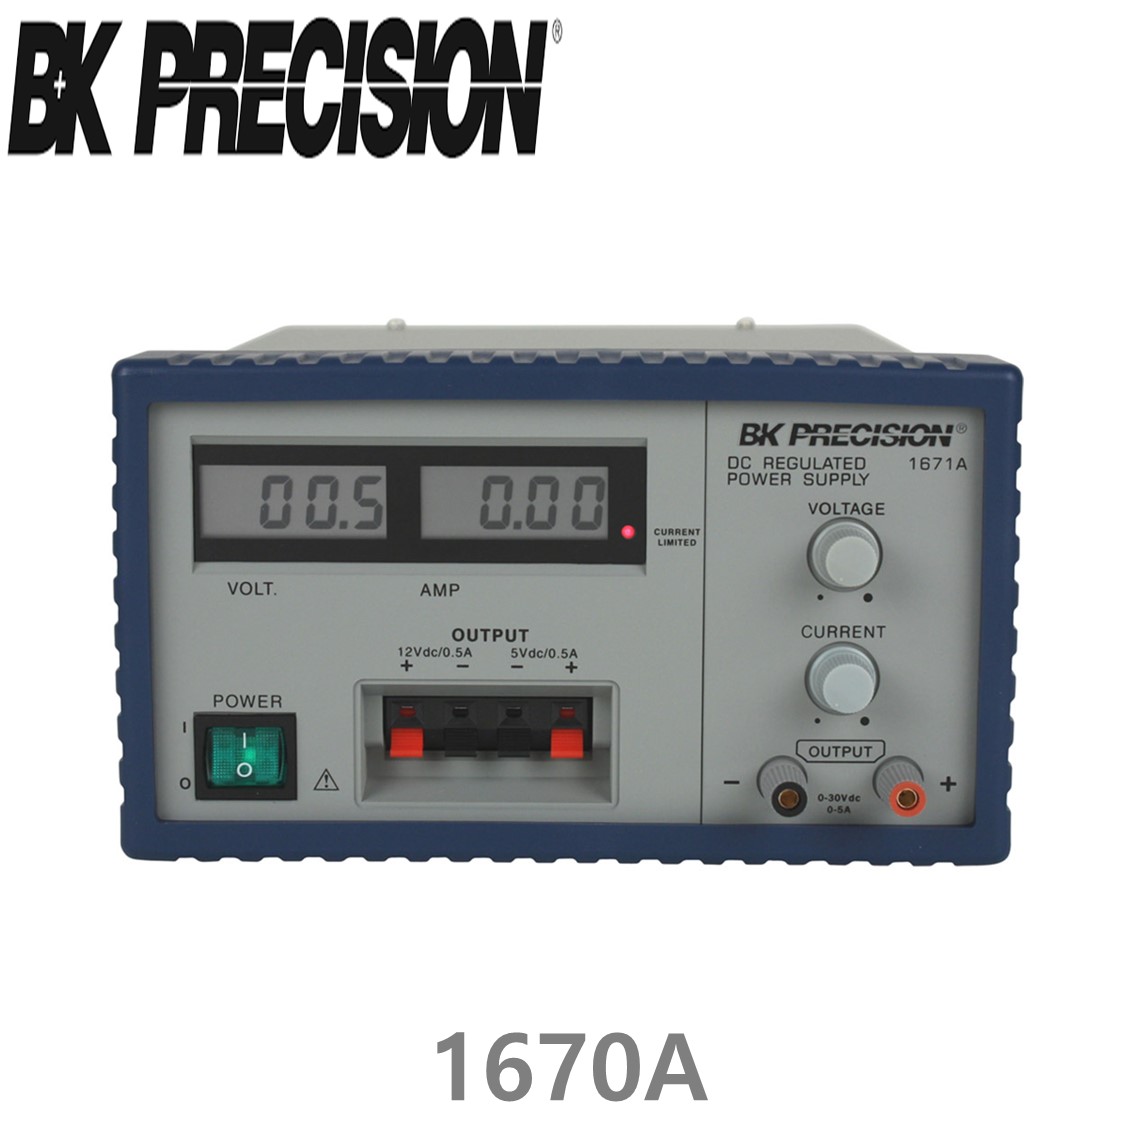 [ BK PRECISION ] BK 1670A, 30V/3A(가변), 12V/0.5A(고정), 5V/0.5V(고정), Triple OutputDC Power Supply, 3채널 DC 전원공급기, B&K 1670A